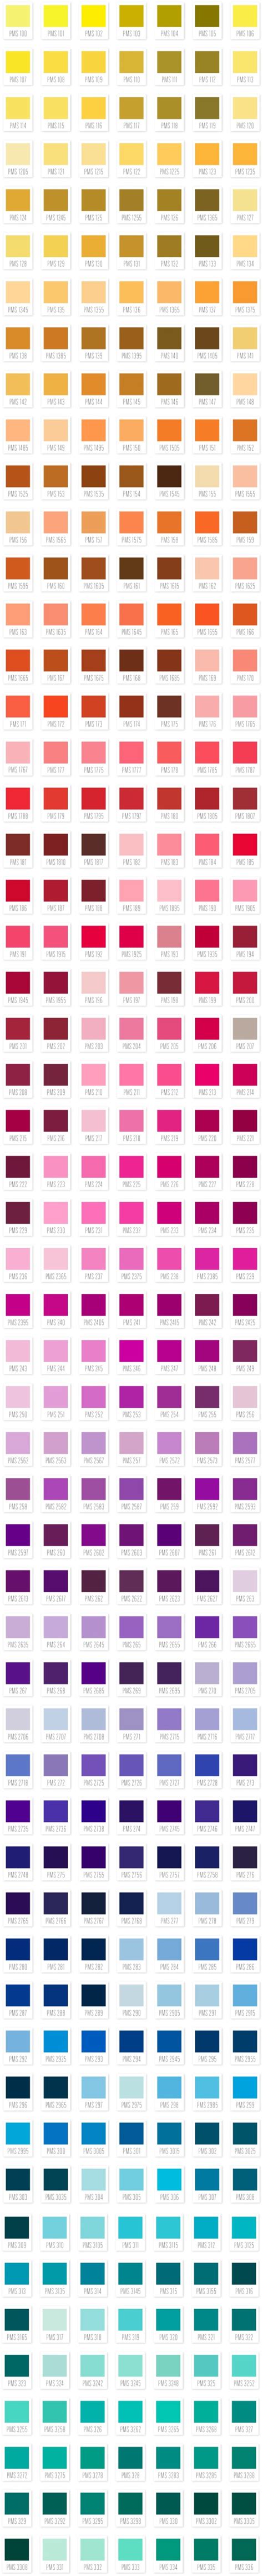 paleta de colores pantone colour schemes color combos color patterns